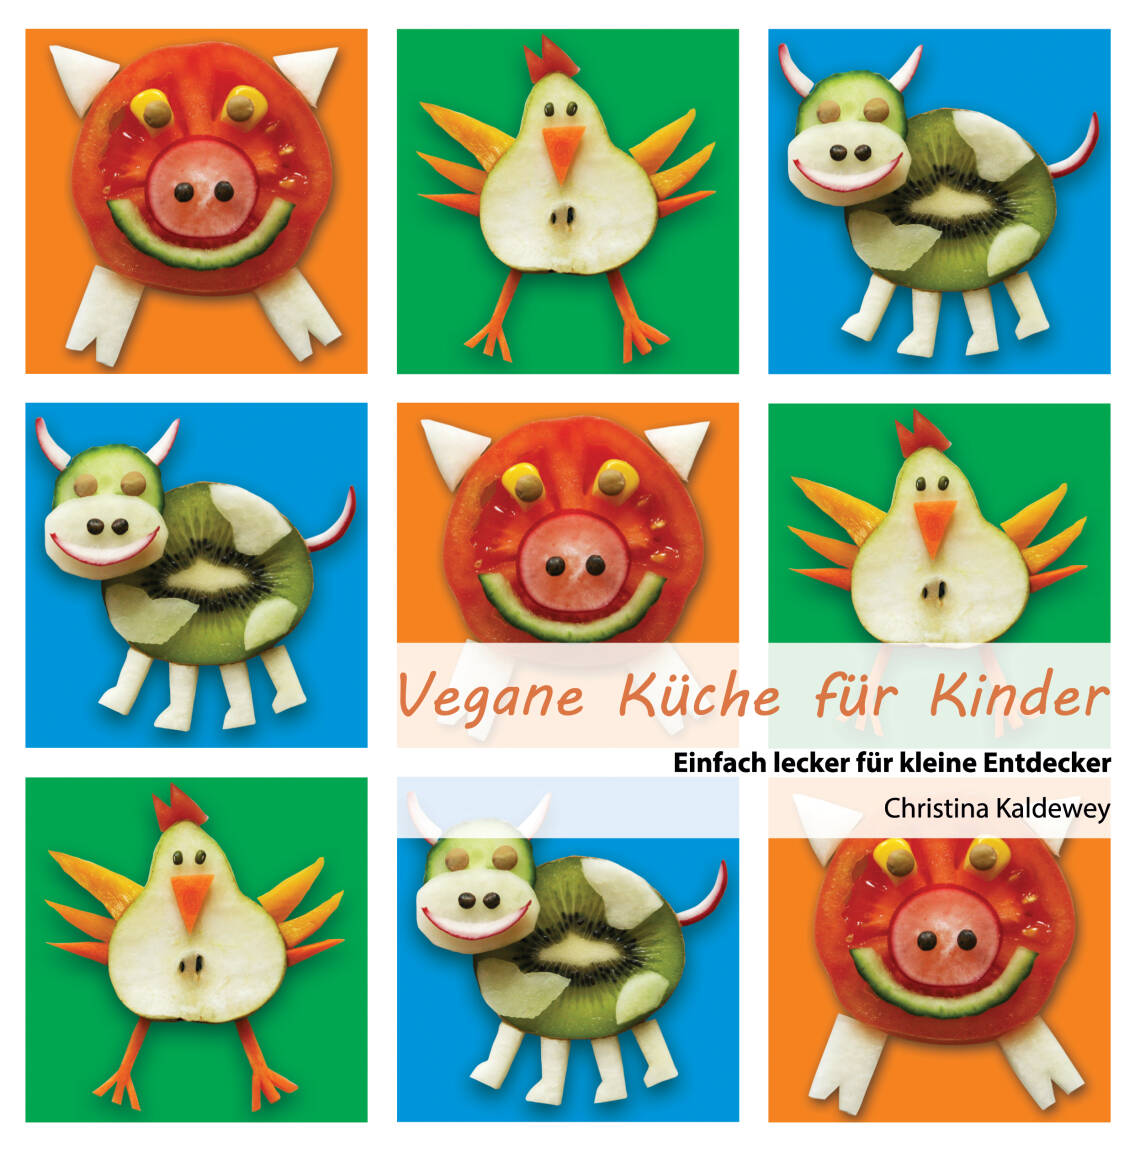 Vegane Küche für Kinder von Christina Kaldewey